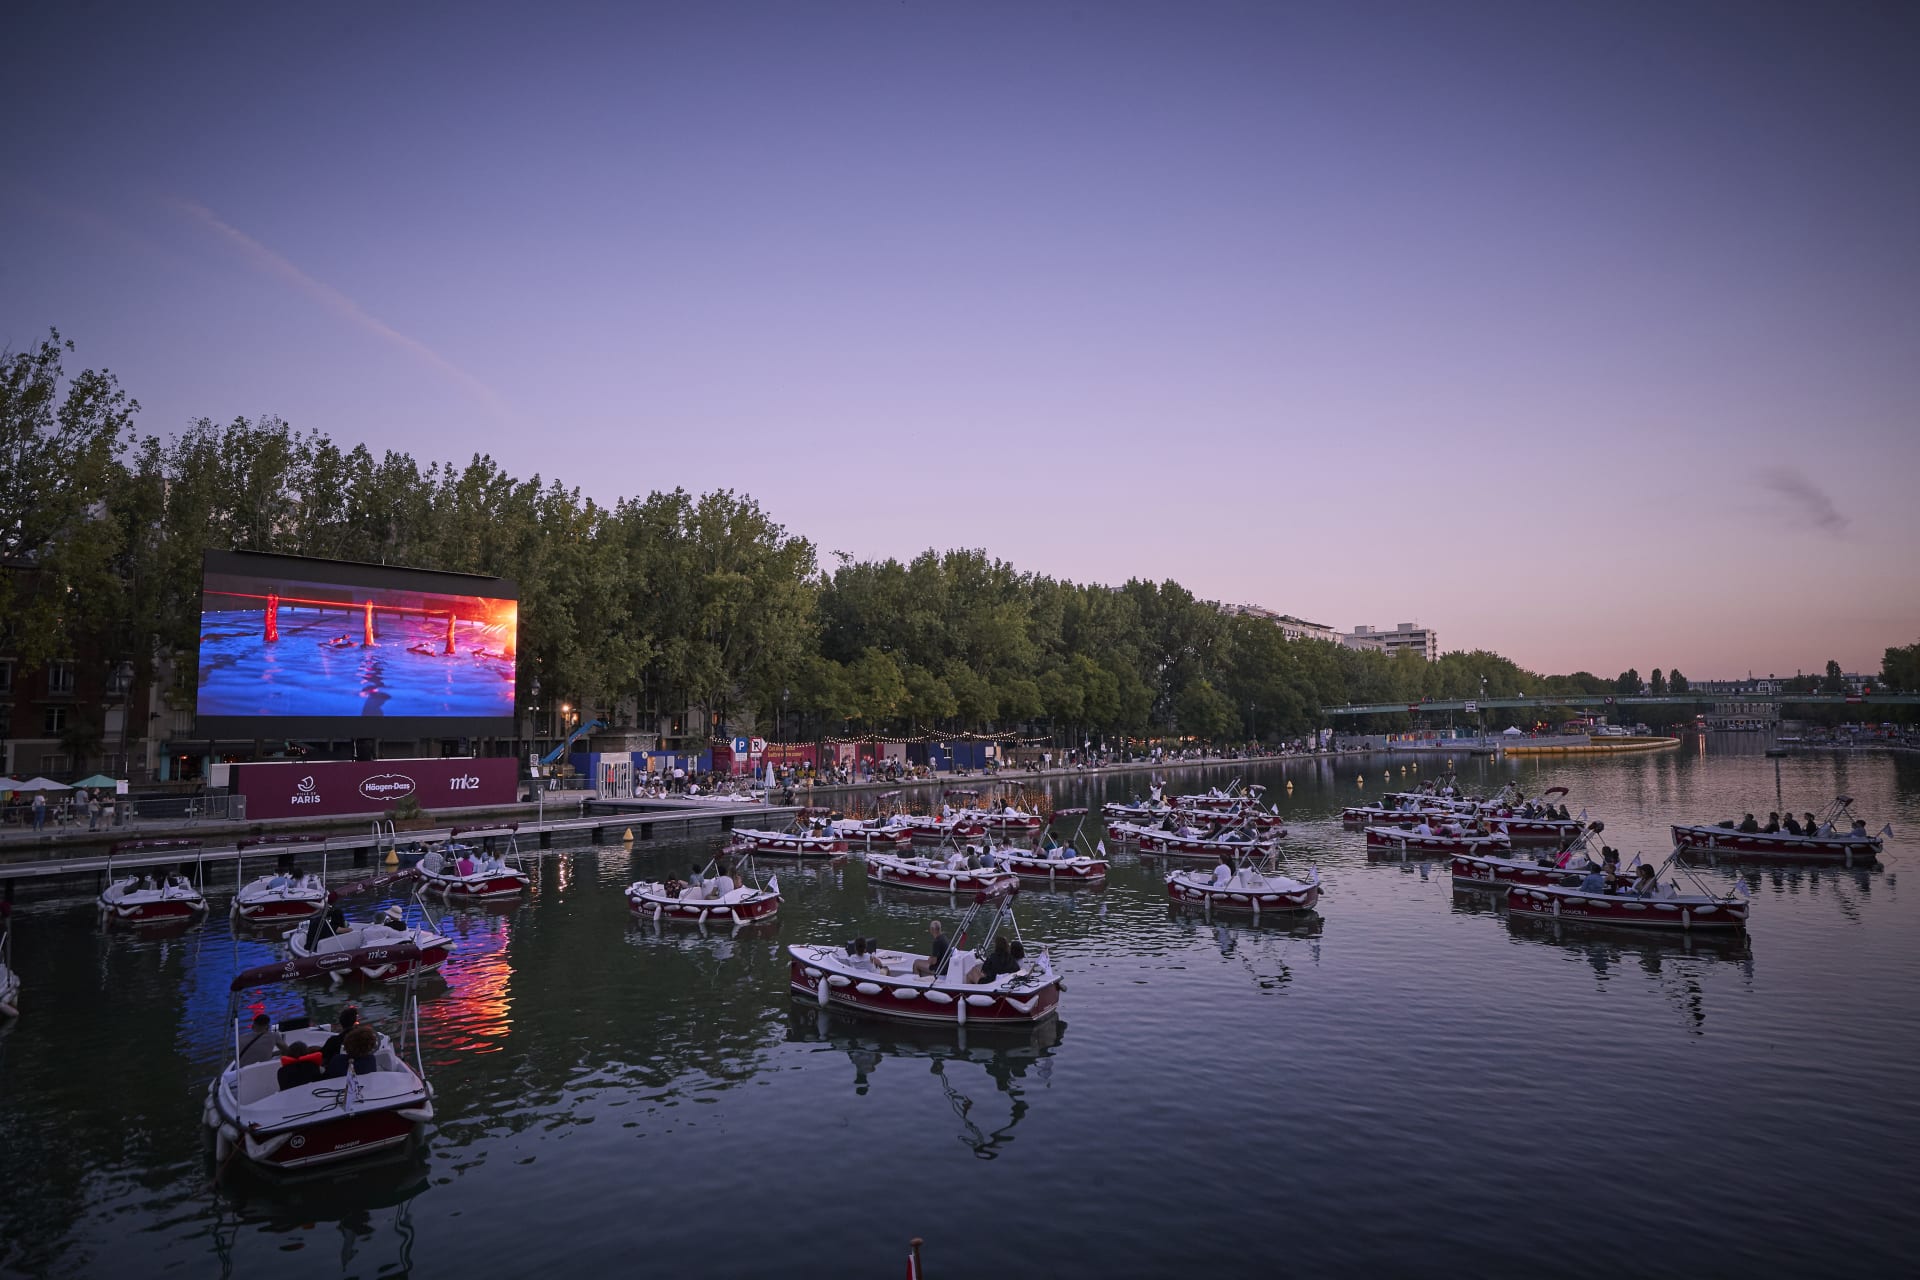 بقوارب متباعدة اجتماعياً.. نهر السين في باريس يتحول لسينما عائمة في ظل جائحة كورونا